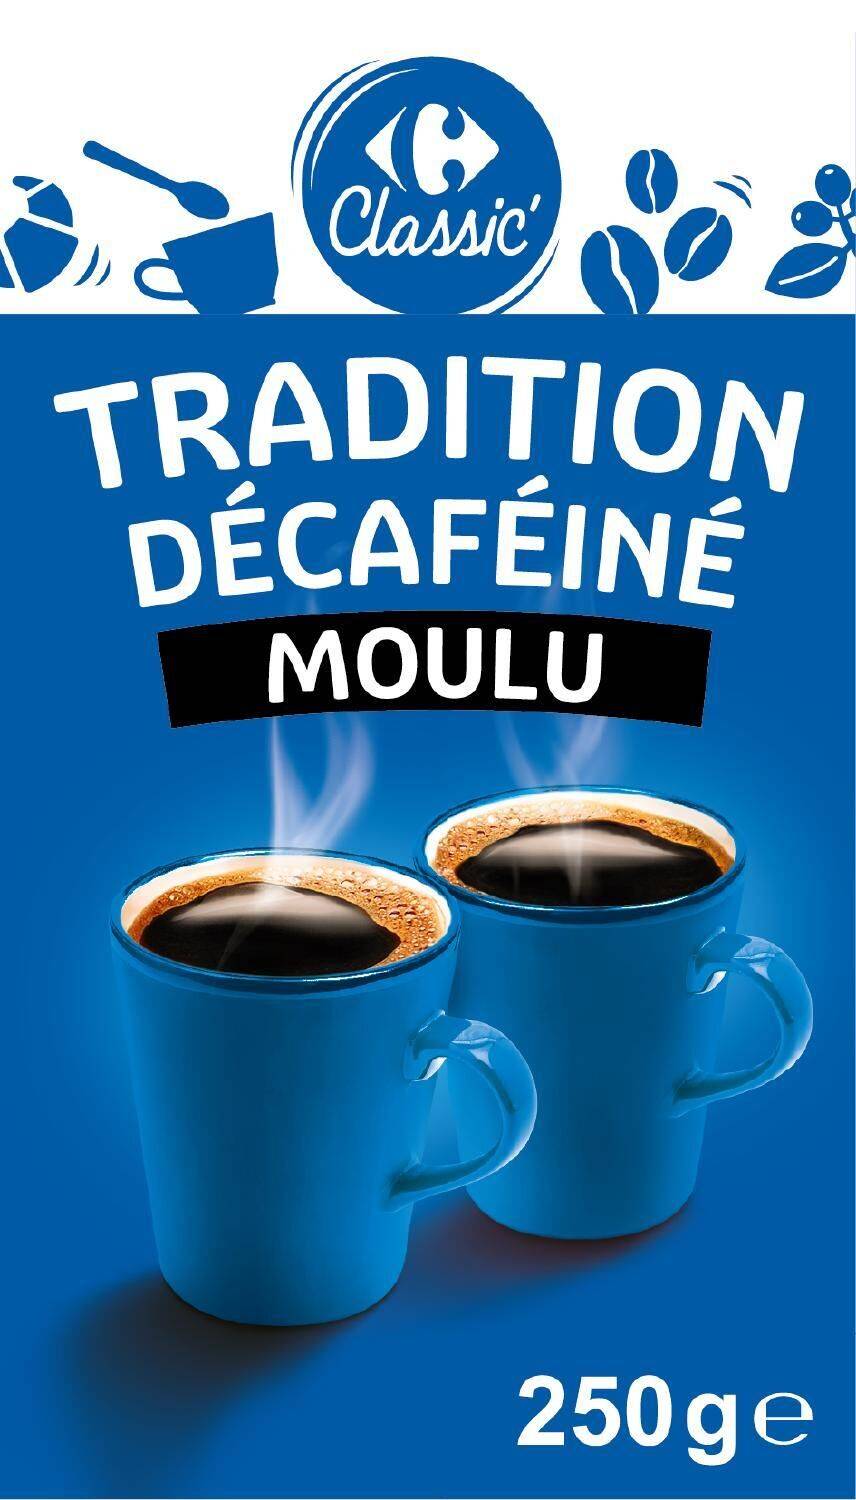 Carrefour Classic' - Tradition café décaféiné moulu (250 g)